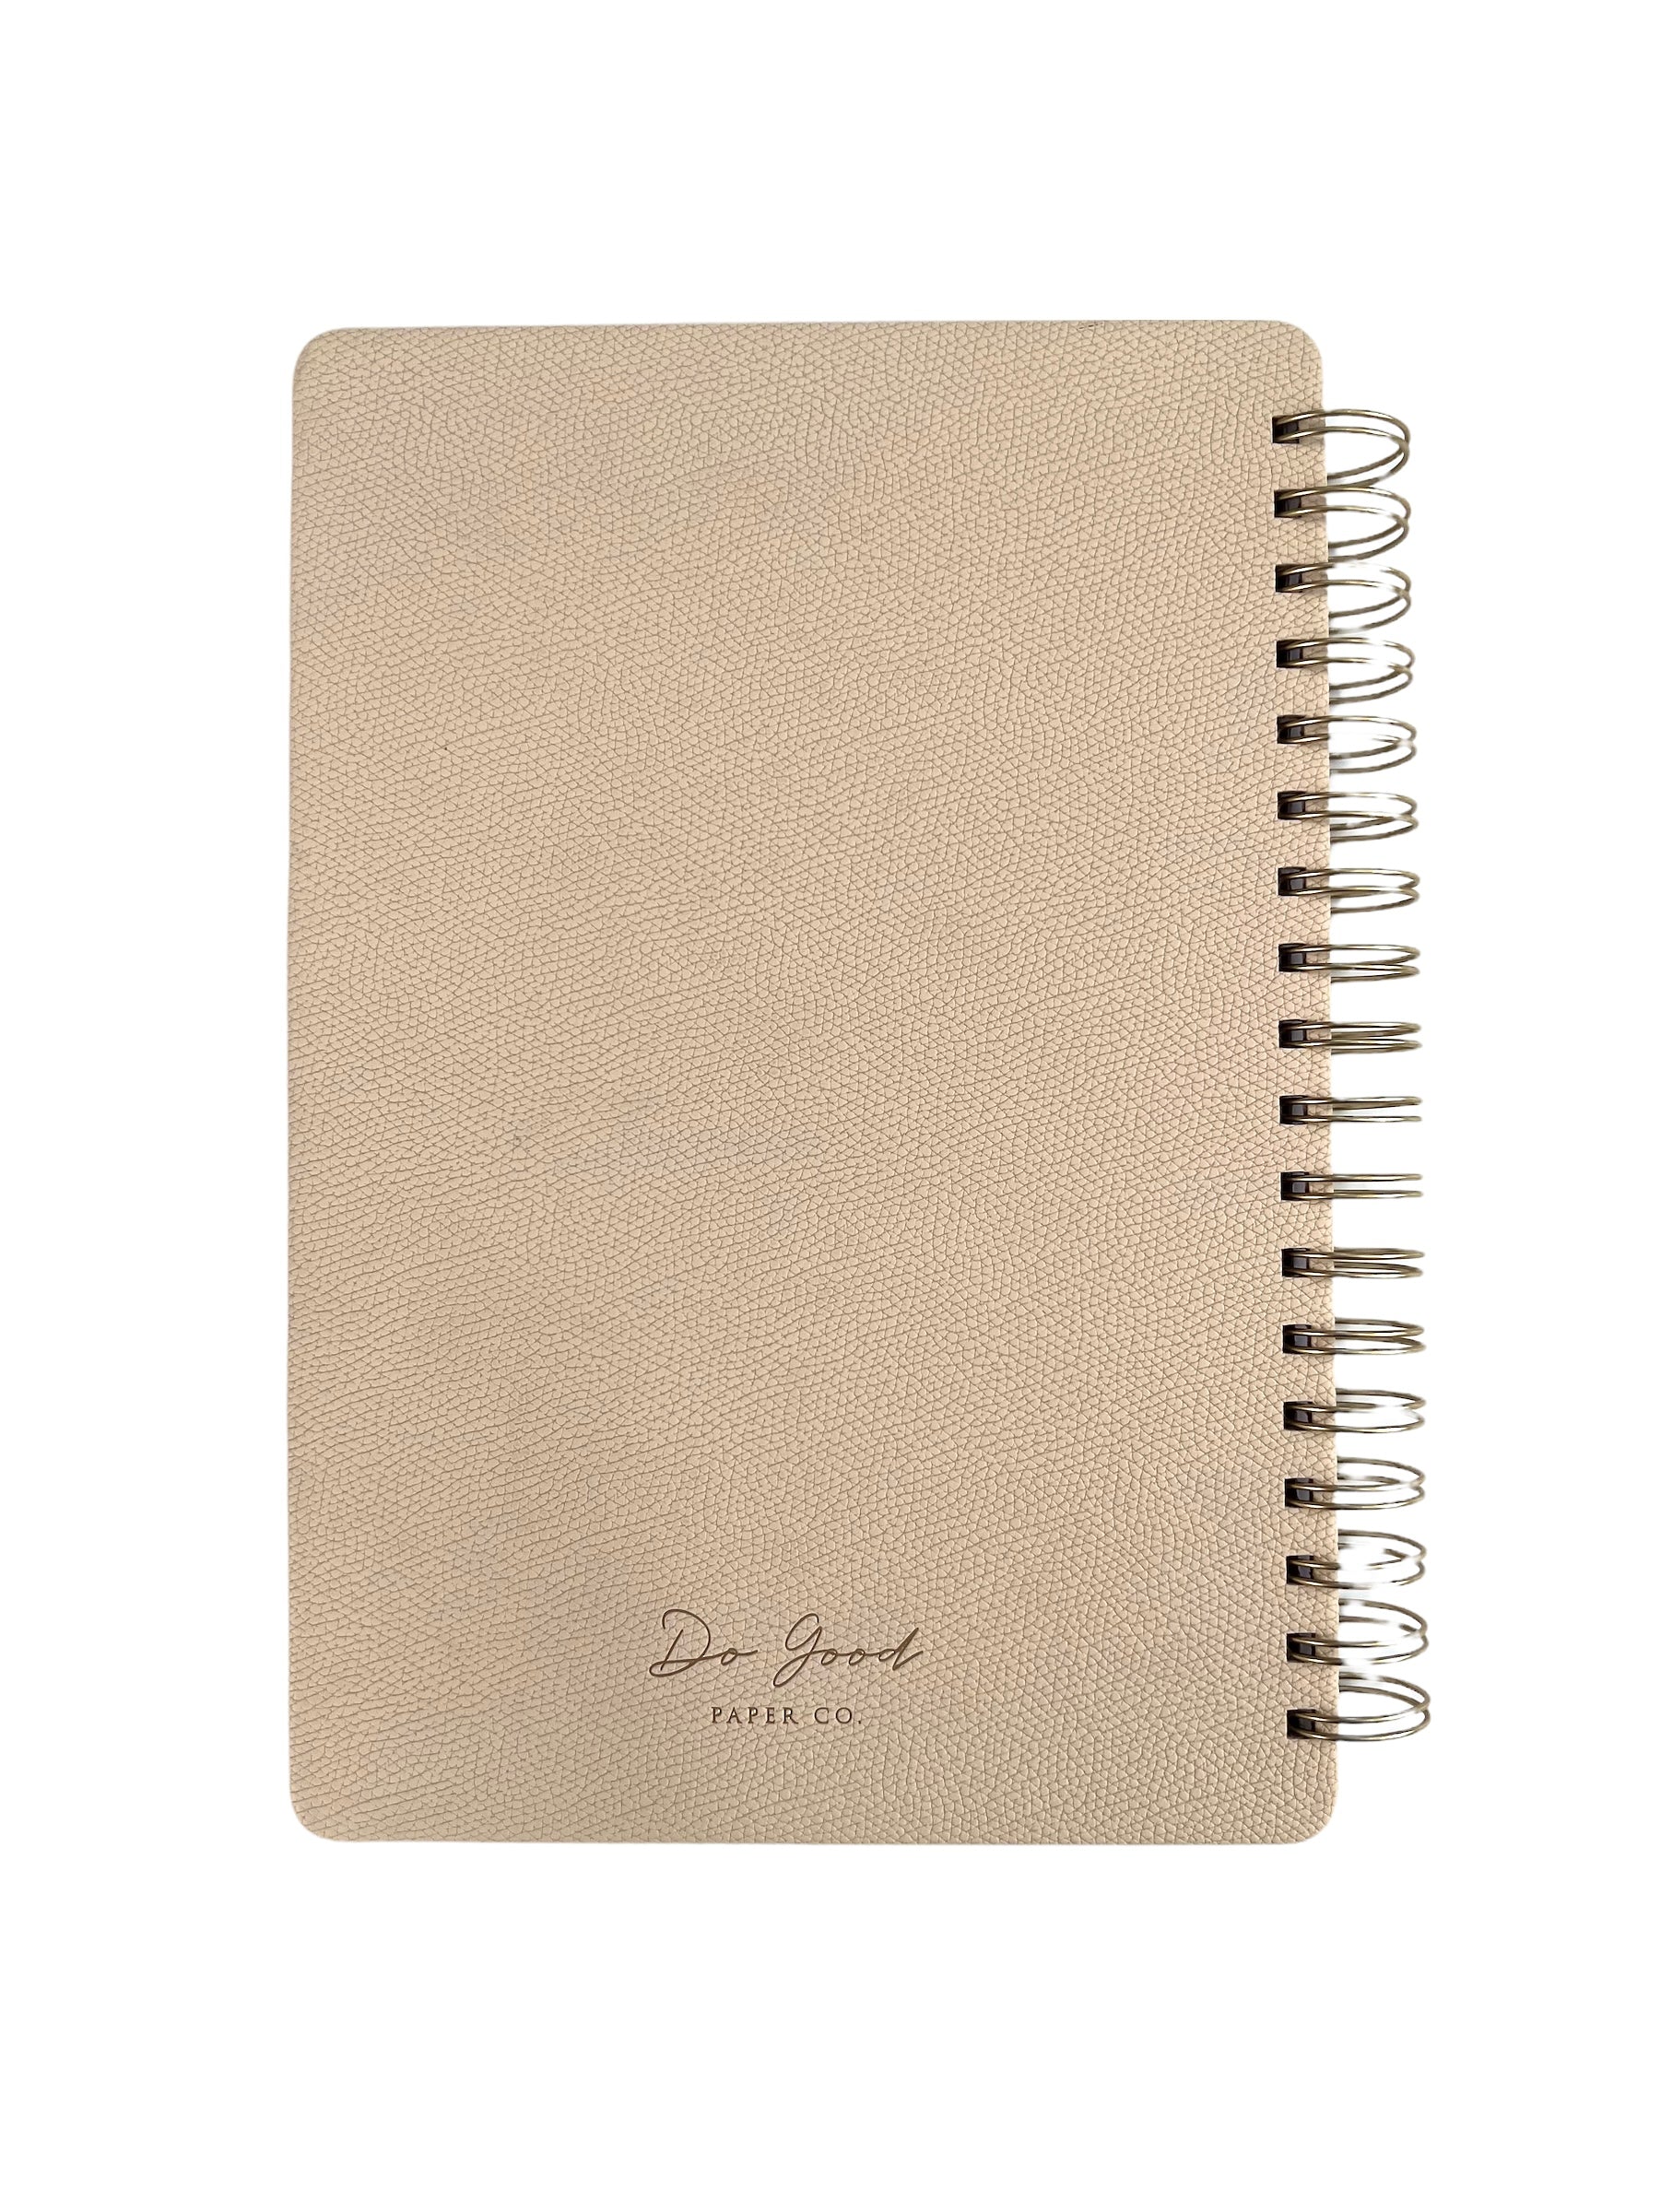 Medium spiral notebook in beige, vegan leather with gold spirals